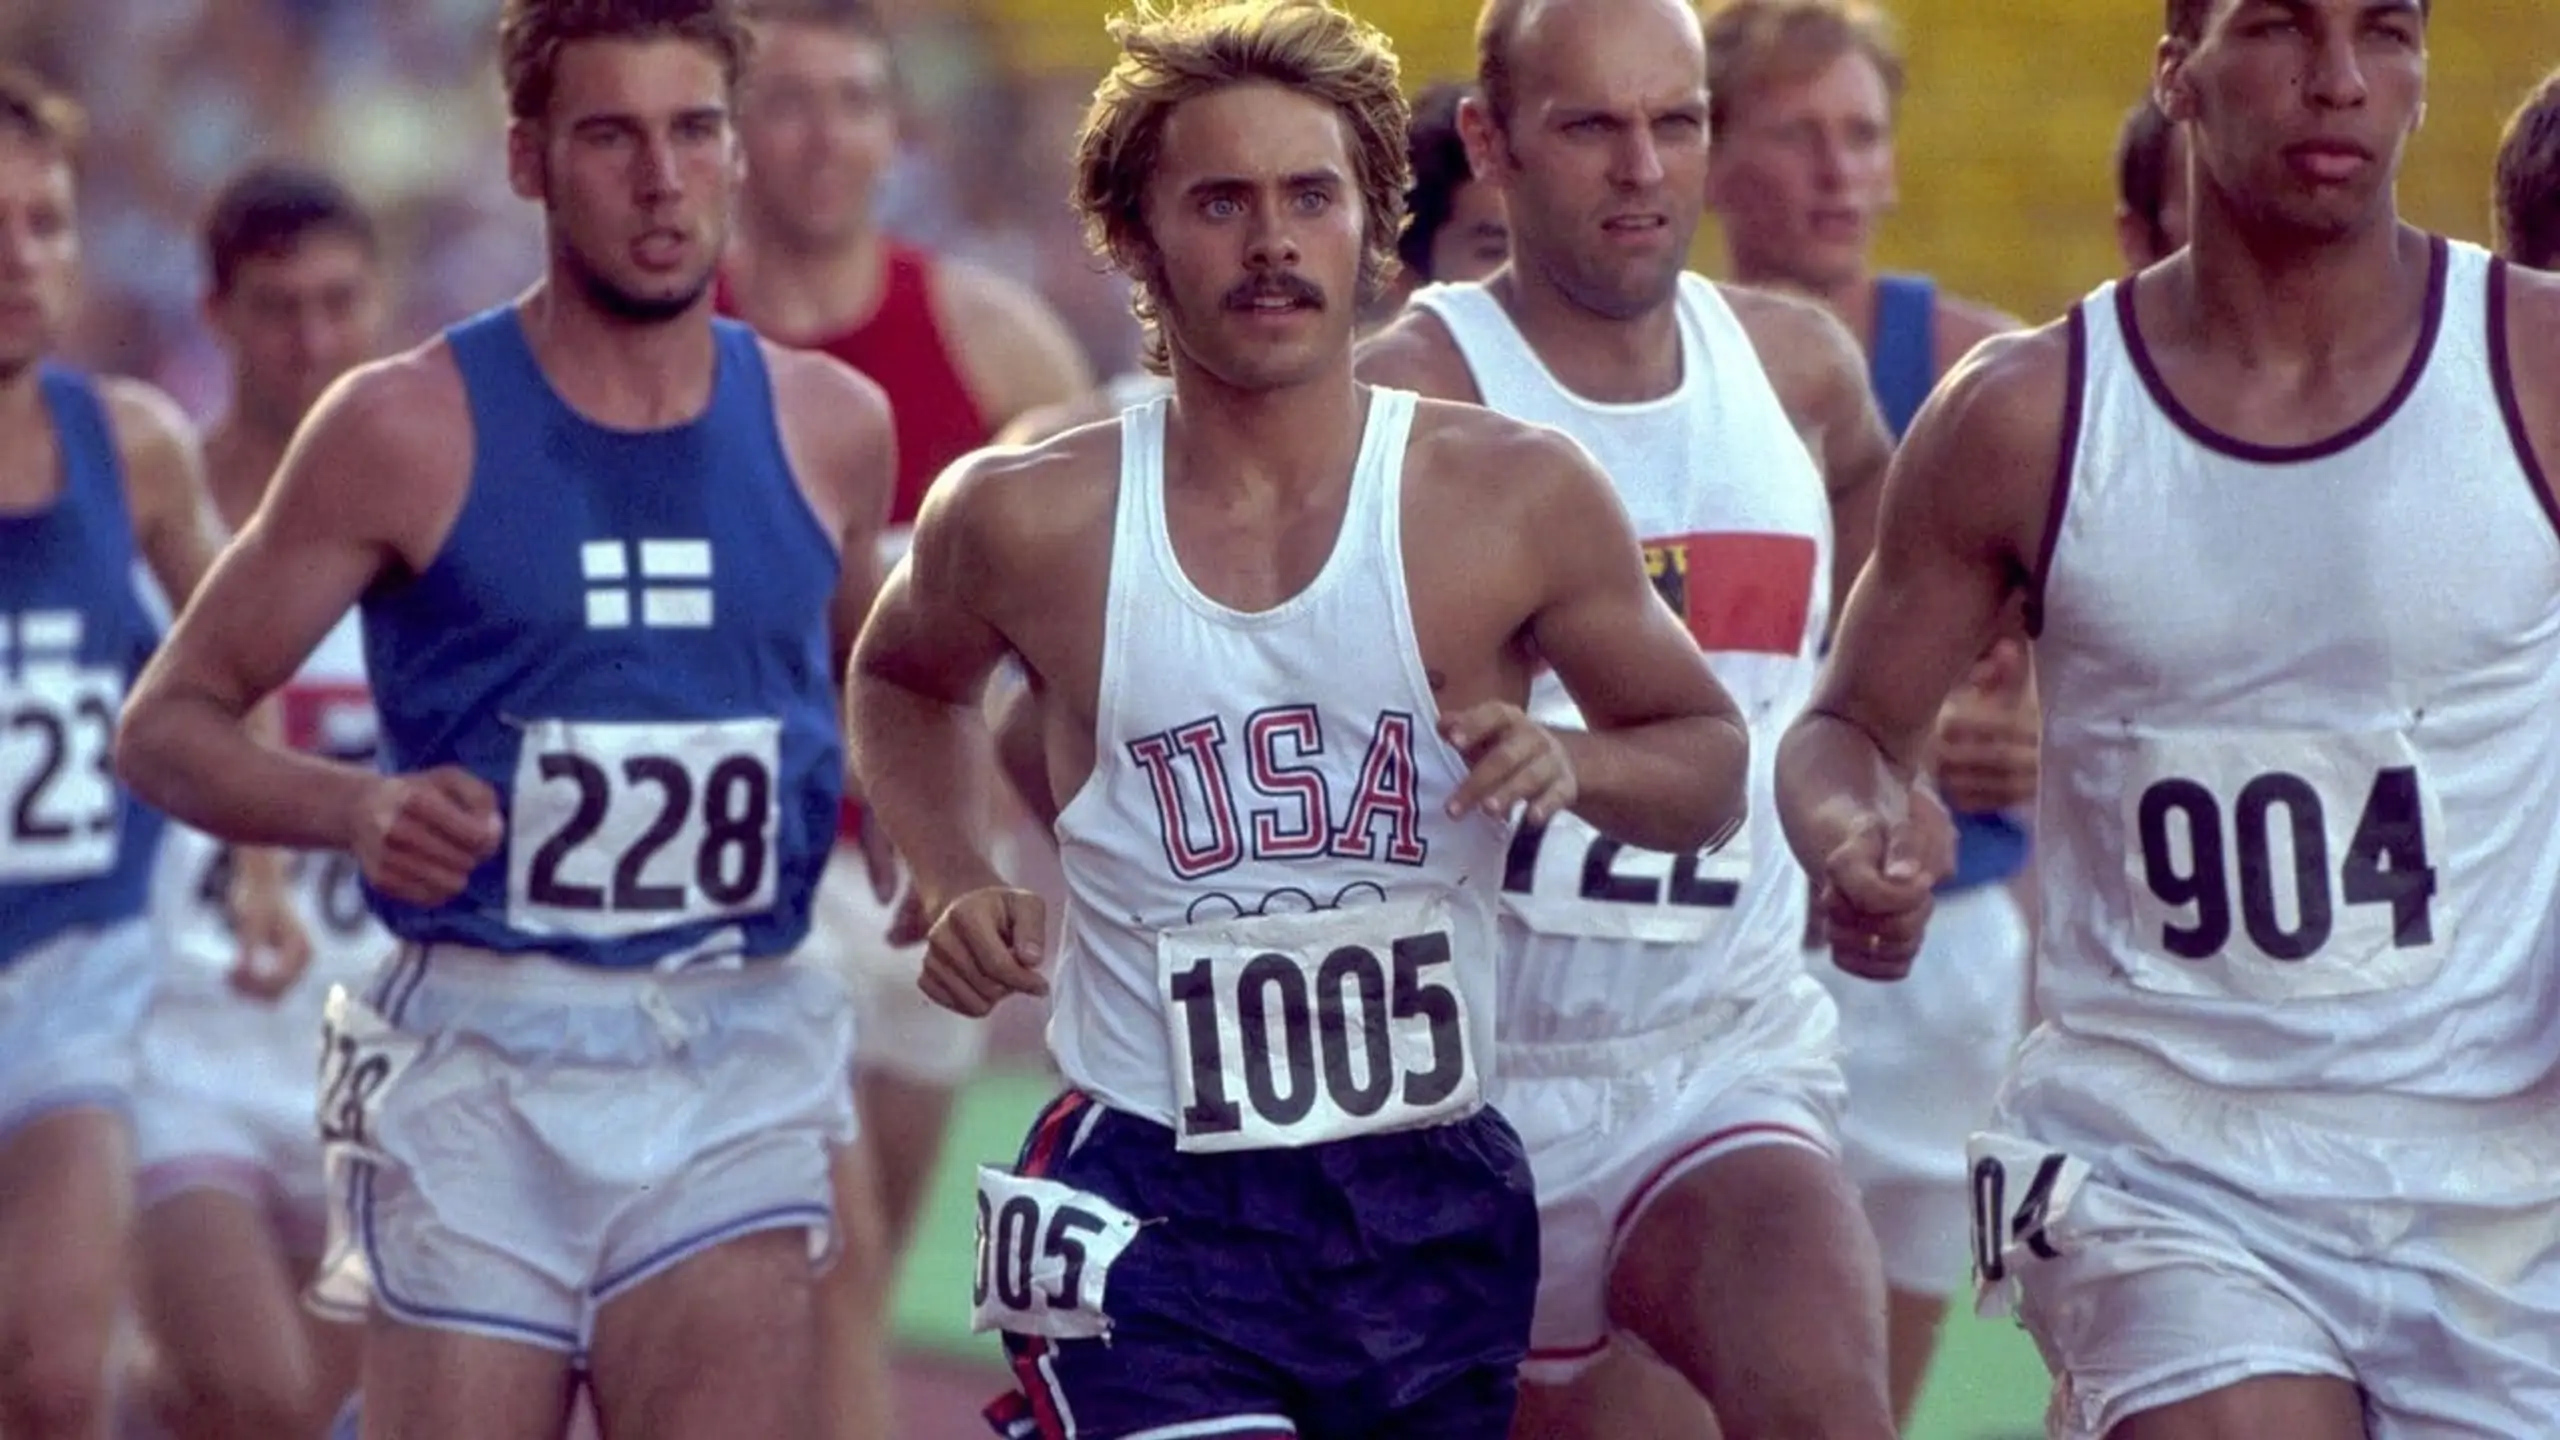 Steve Prefontaine - Der Langstreckenläufer